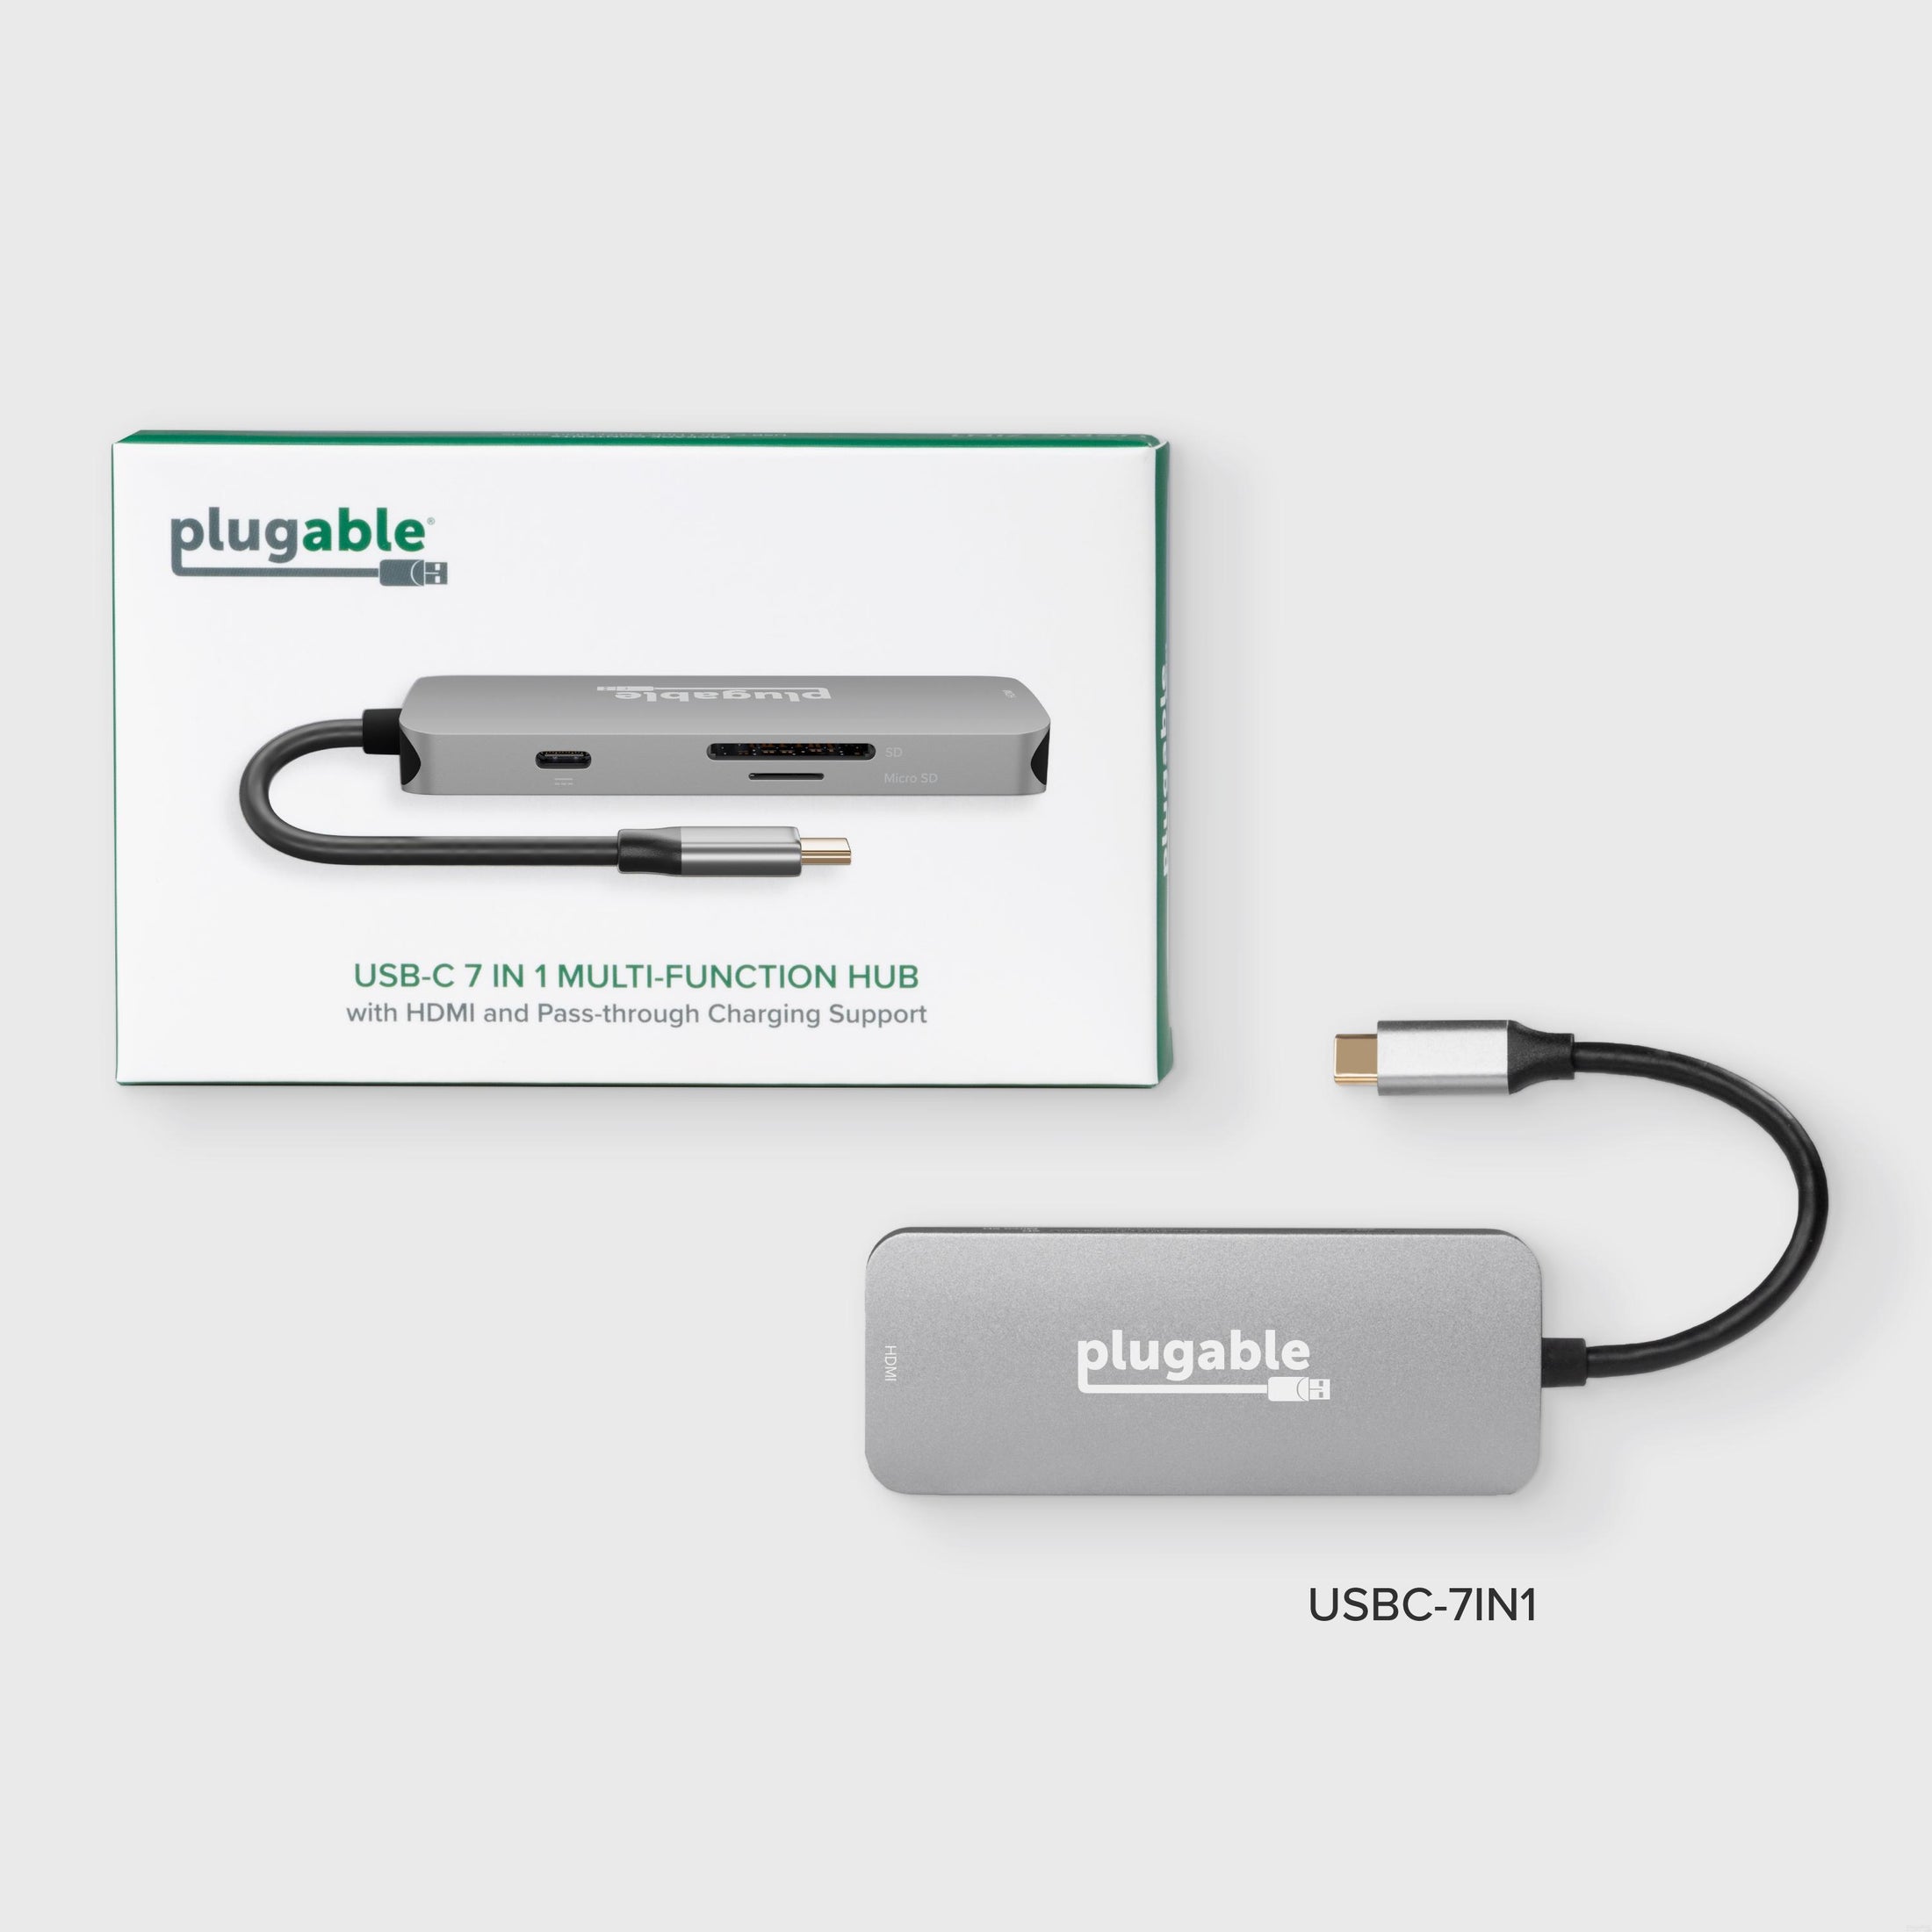 Plugable USB-C 7-in-1 Hub